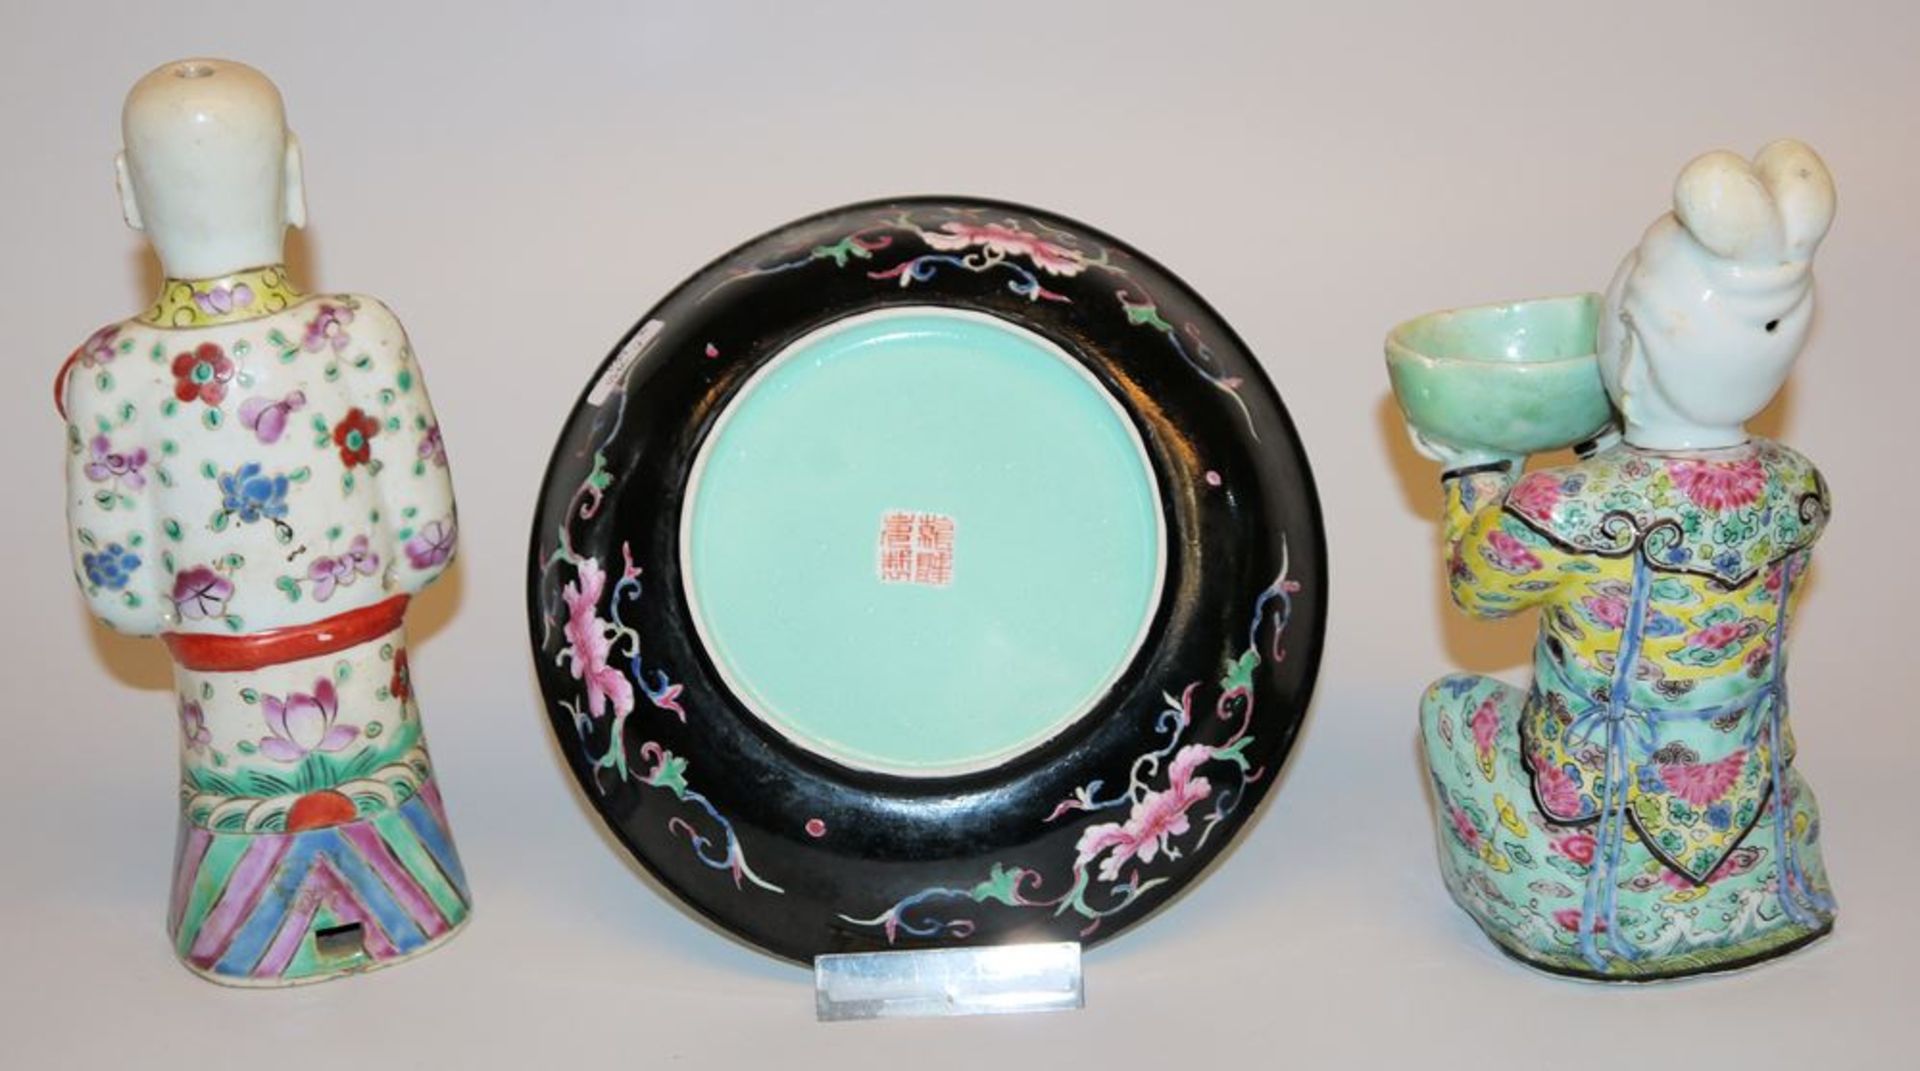 Zwei Porzellanfiguren und ein Glückwunsch-Teller, China ab Anfang 20. Jh. - Bild 2 aus 2